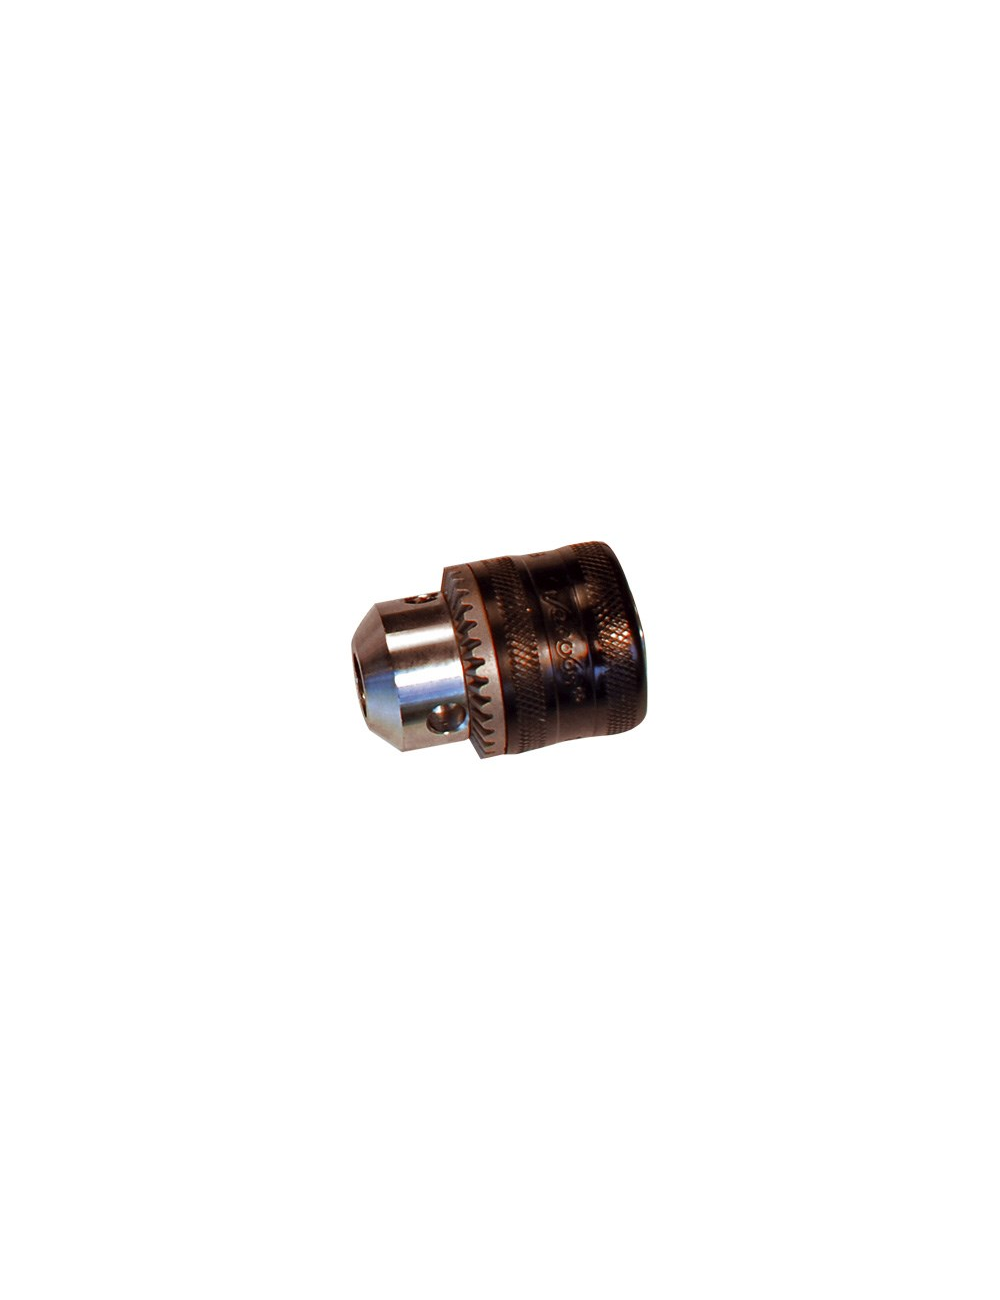 E92 07-12 Tpi chrome boulon de roue couvre 17mm nut caps pour bmw 3 series